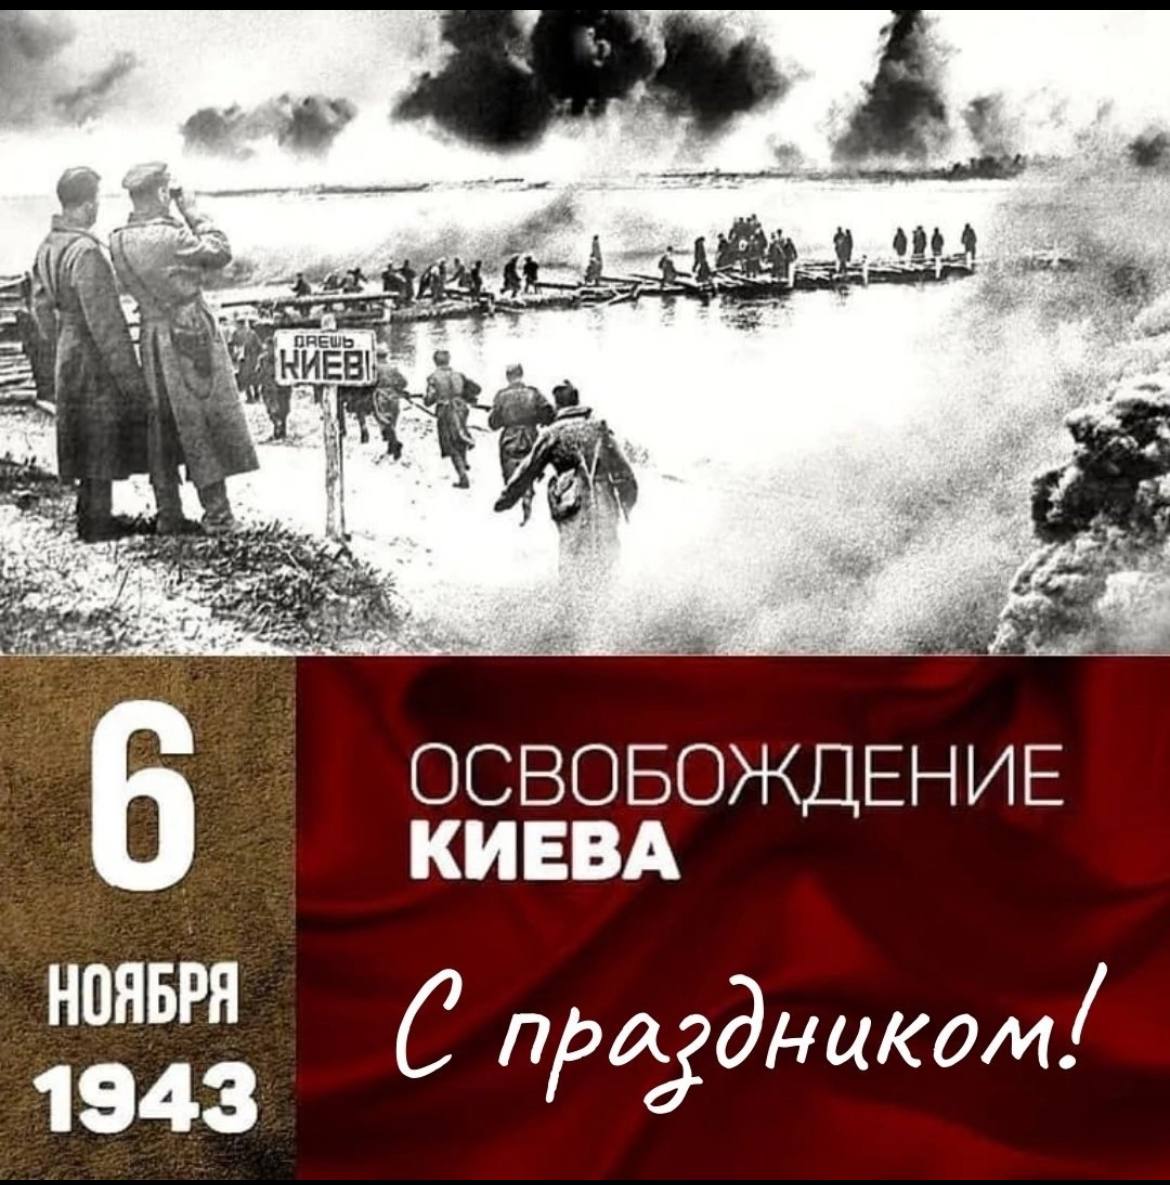 Освобождение киева год. 6 Ноября 1943 г. Киев освобожден от немецко-фашистских оккупантов. Освобождение столицы Украины Киева (6 ноября 1943 г.). Ноябрь 1943 освобождение Киева. 6 Ноября 1943 г советские войска освободили Киев.